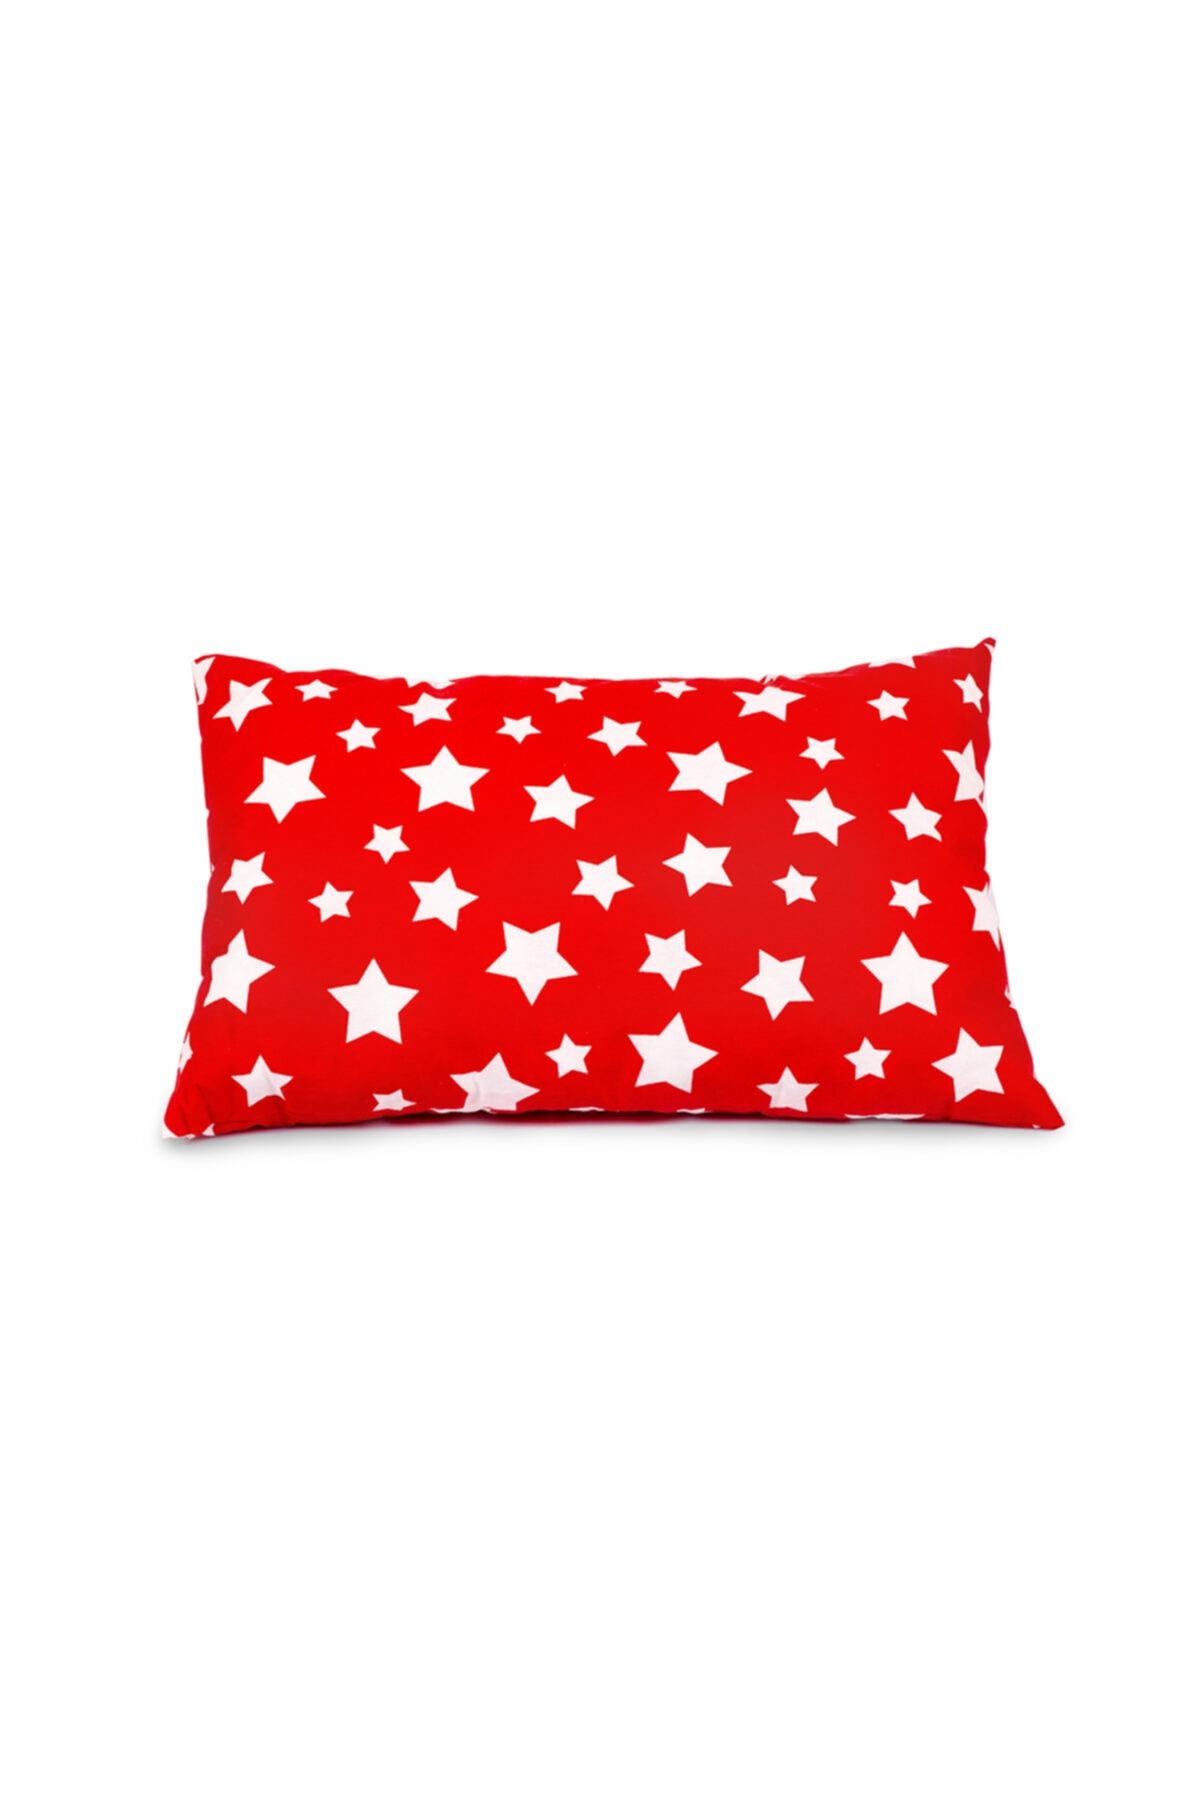 Sluupy Bebek Kırmızı Beyaz Yıldız Figürlü Yastık 35x50 cm